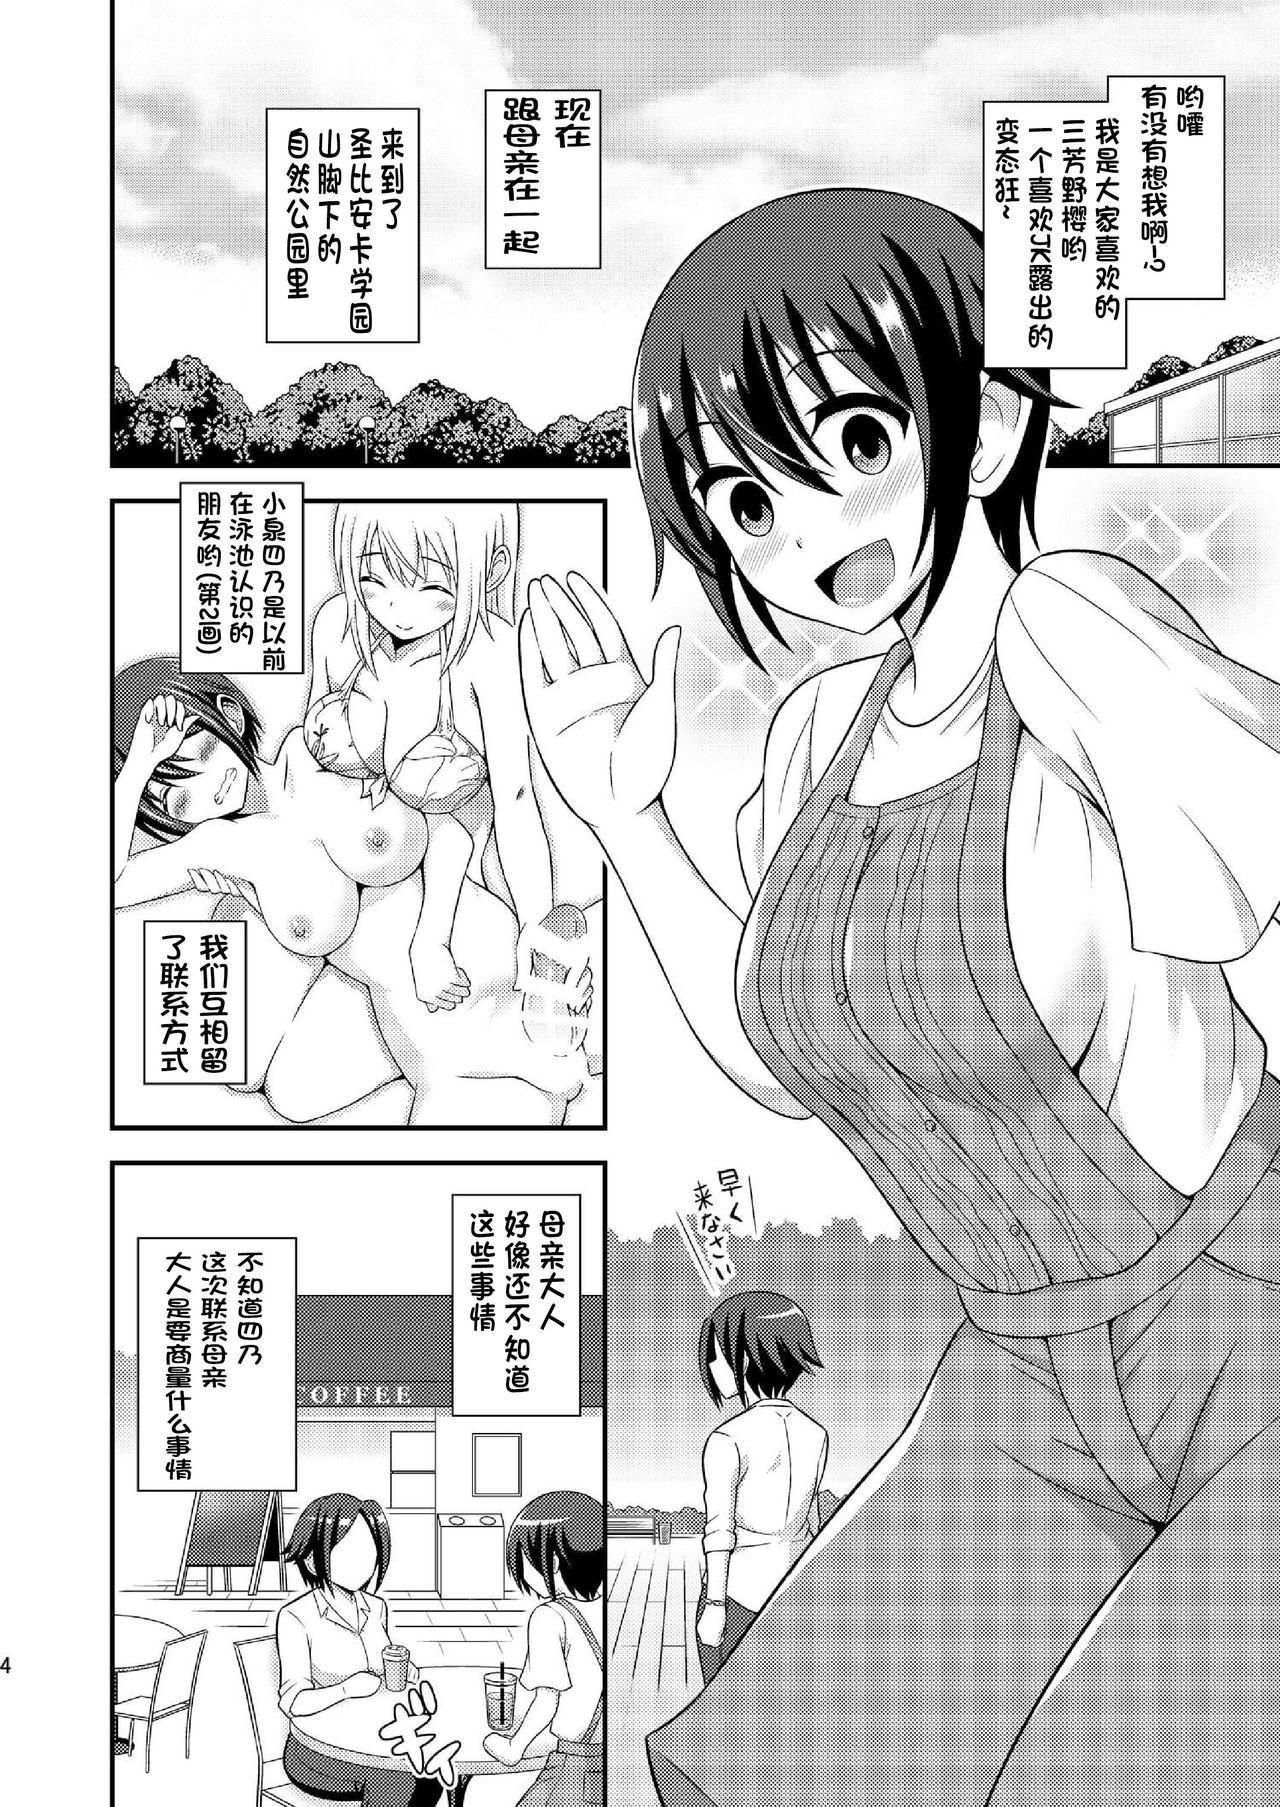 Blows Futanari Roshutsu JK desu ga? 9 - Original Perfect Body Porn - Page 6